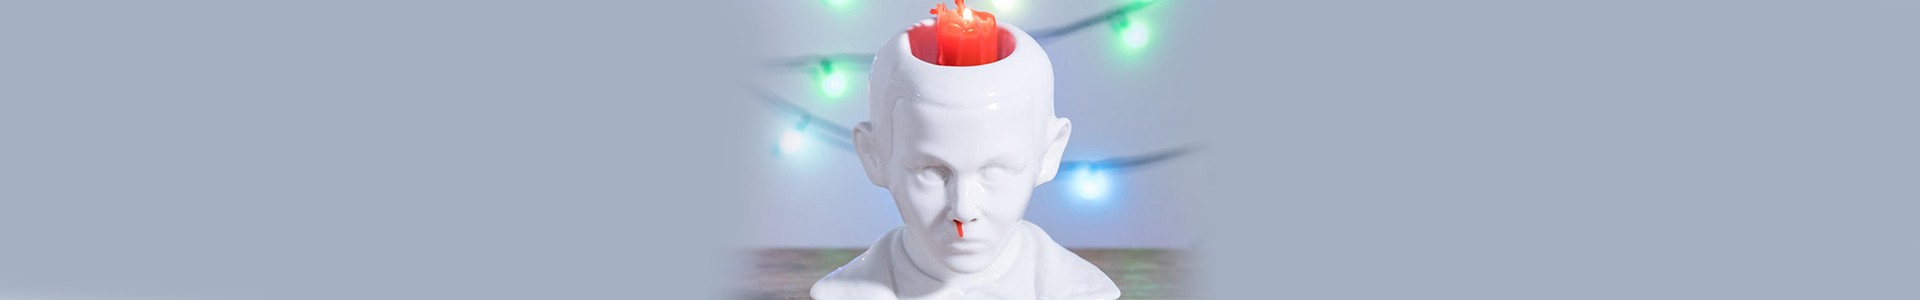 Stranger Things: A vela da Eleven que sangra pelo nariz